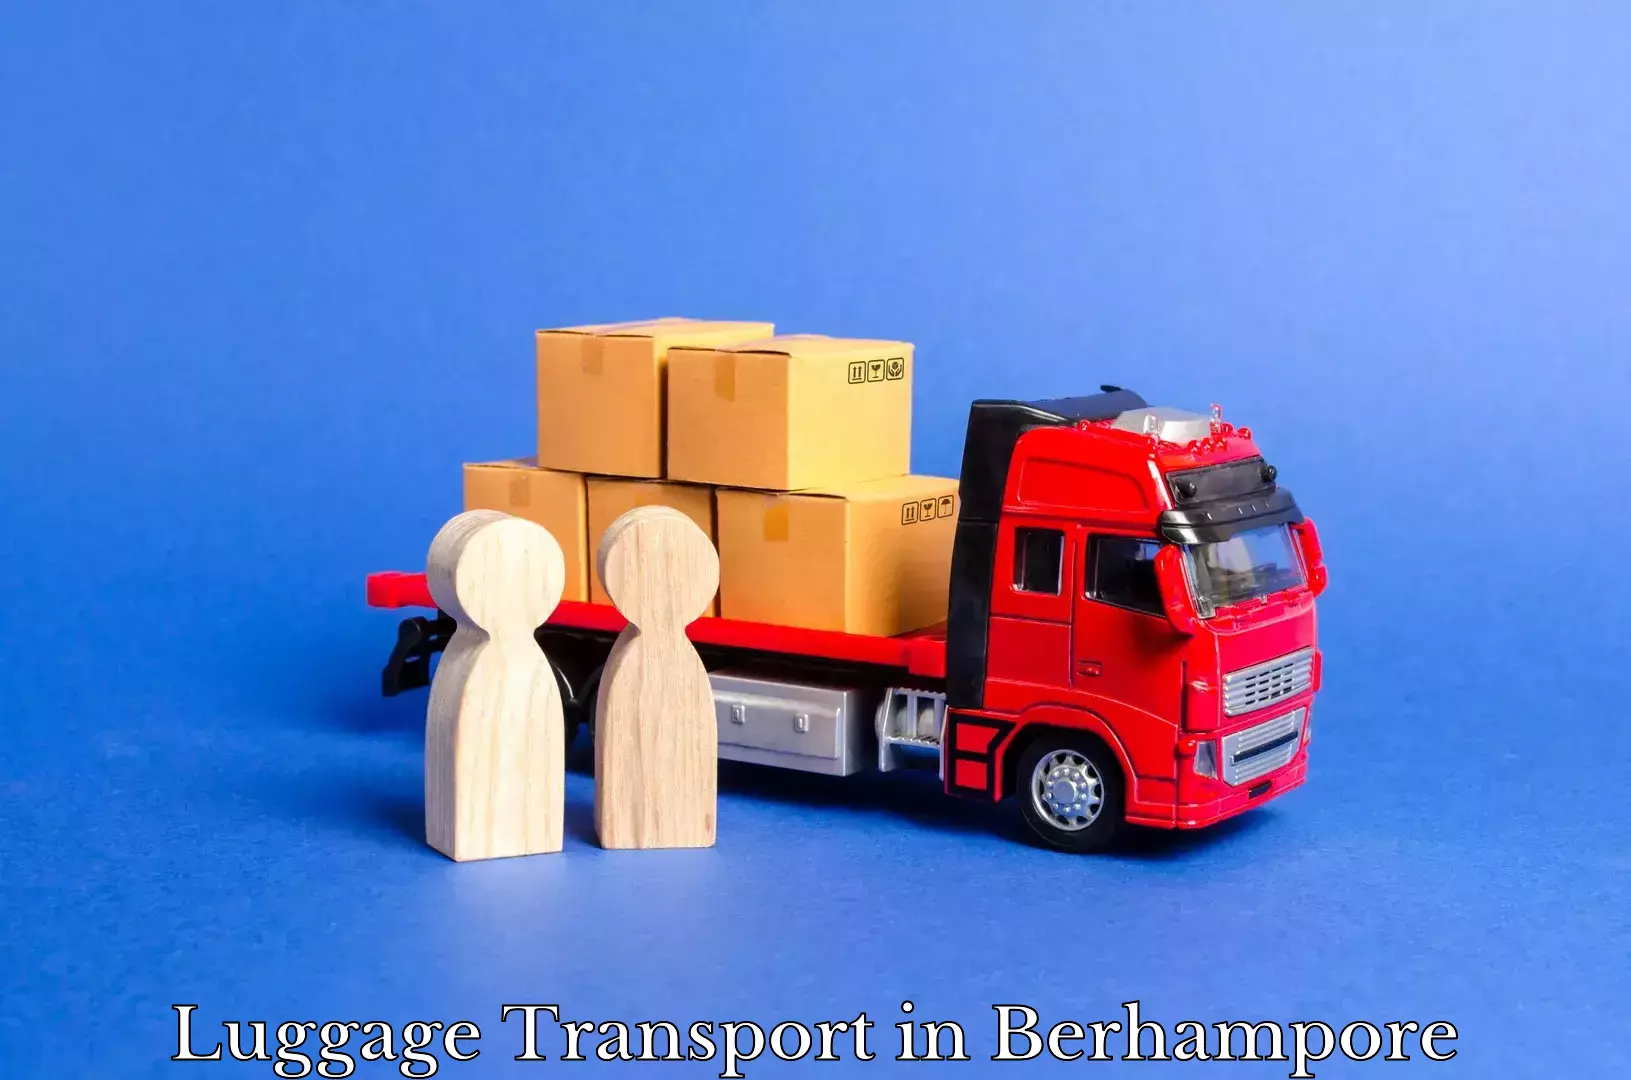 Baggage transport estimate in Berhampore